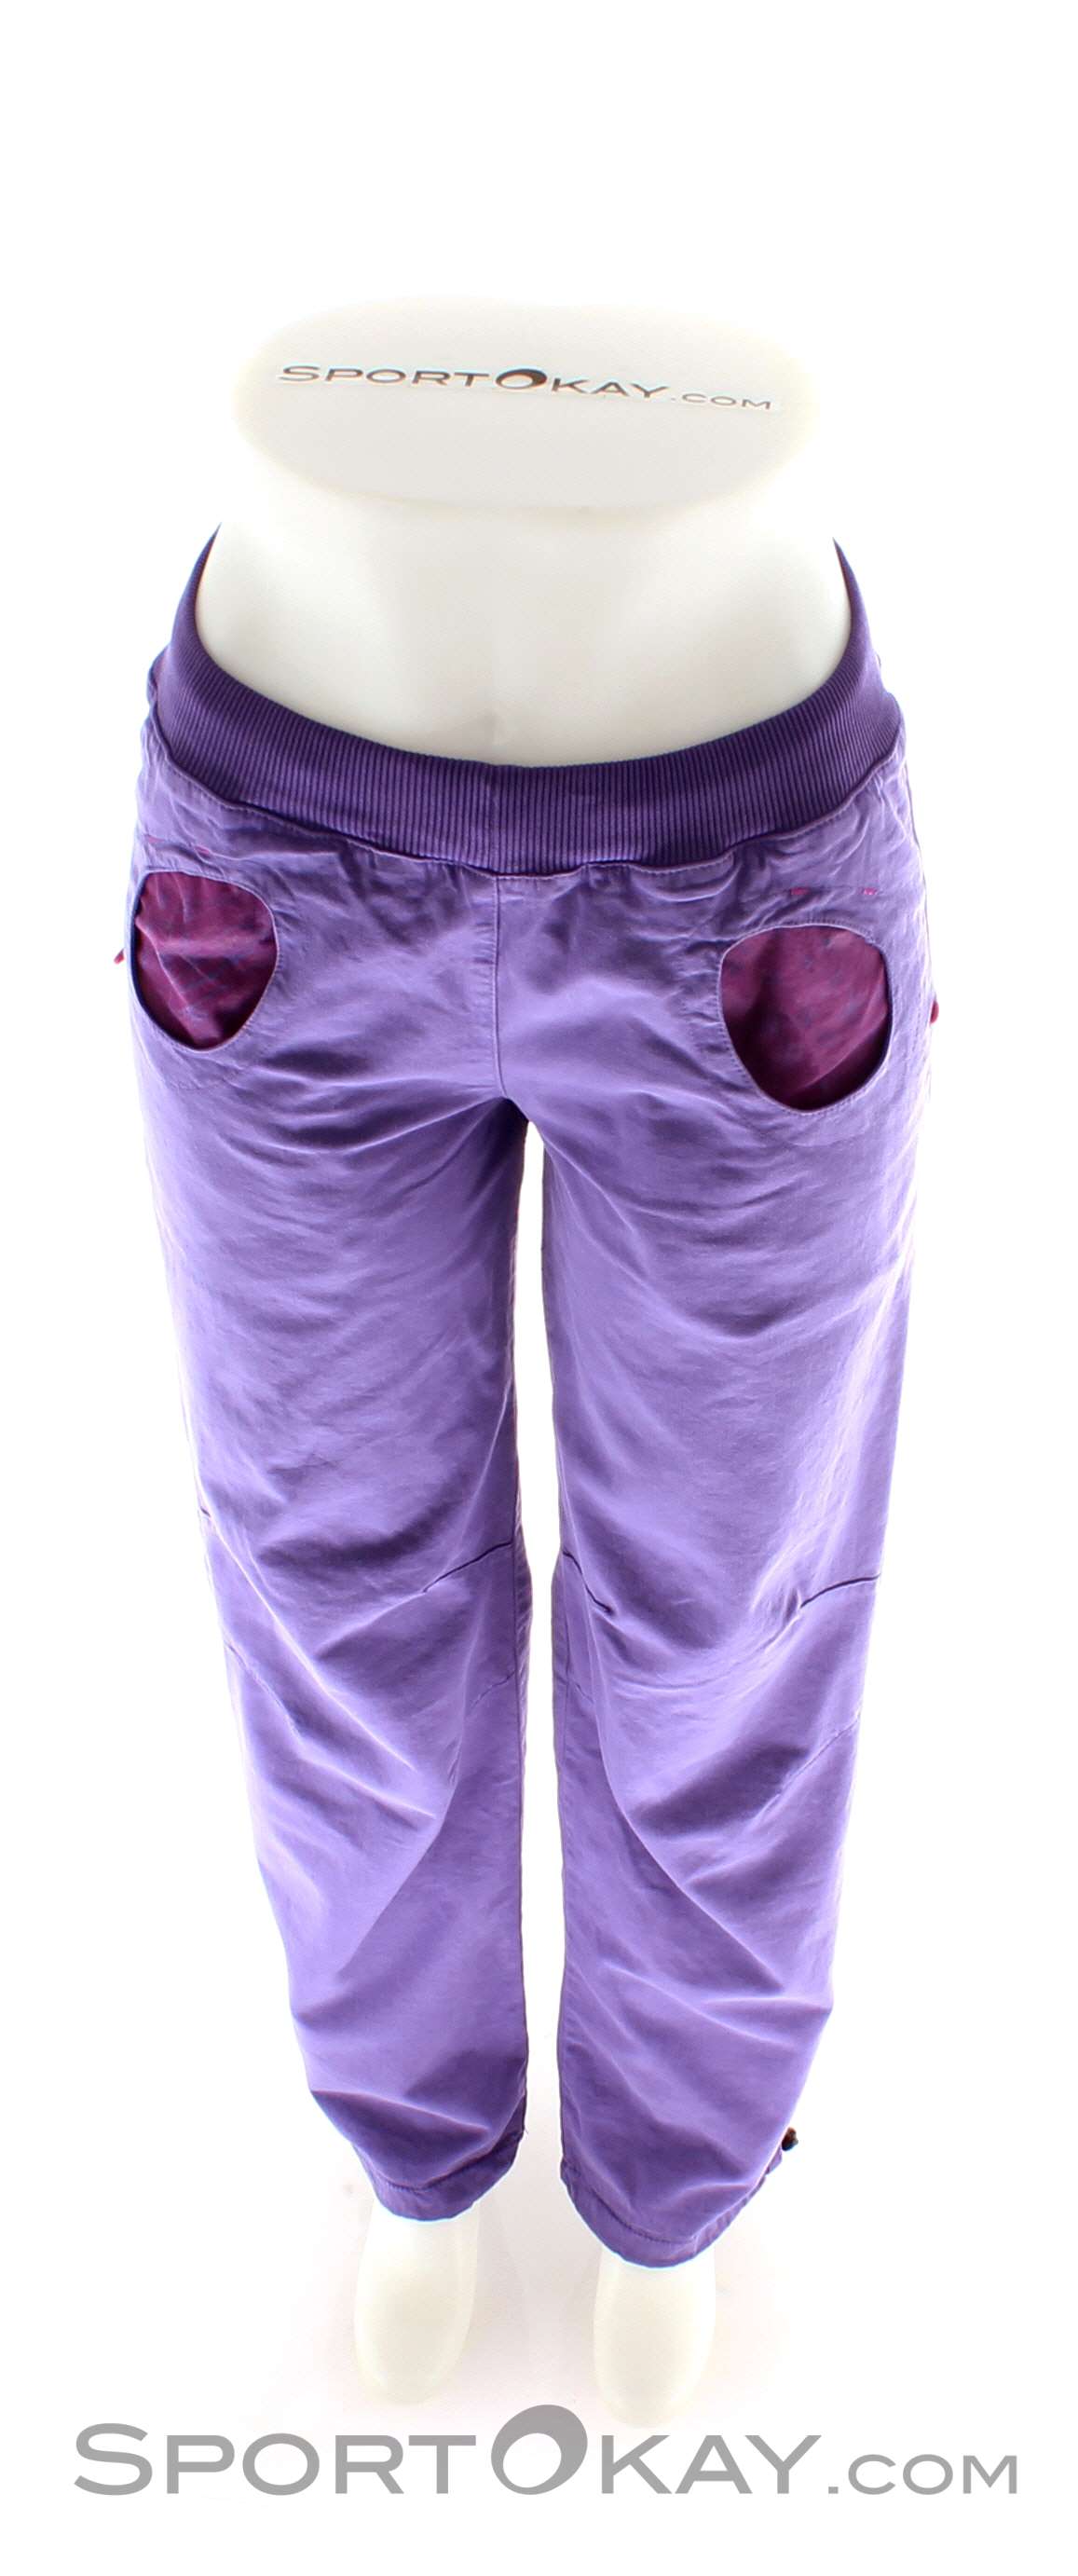 E9 Pulce Donna Pantaloni da Arrampicata - Pantaloni e pantaloncini -  Abbigliamento da arrampicata - Arrampicata - Tutti